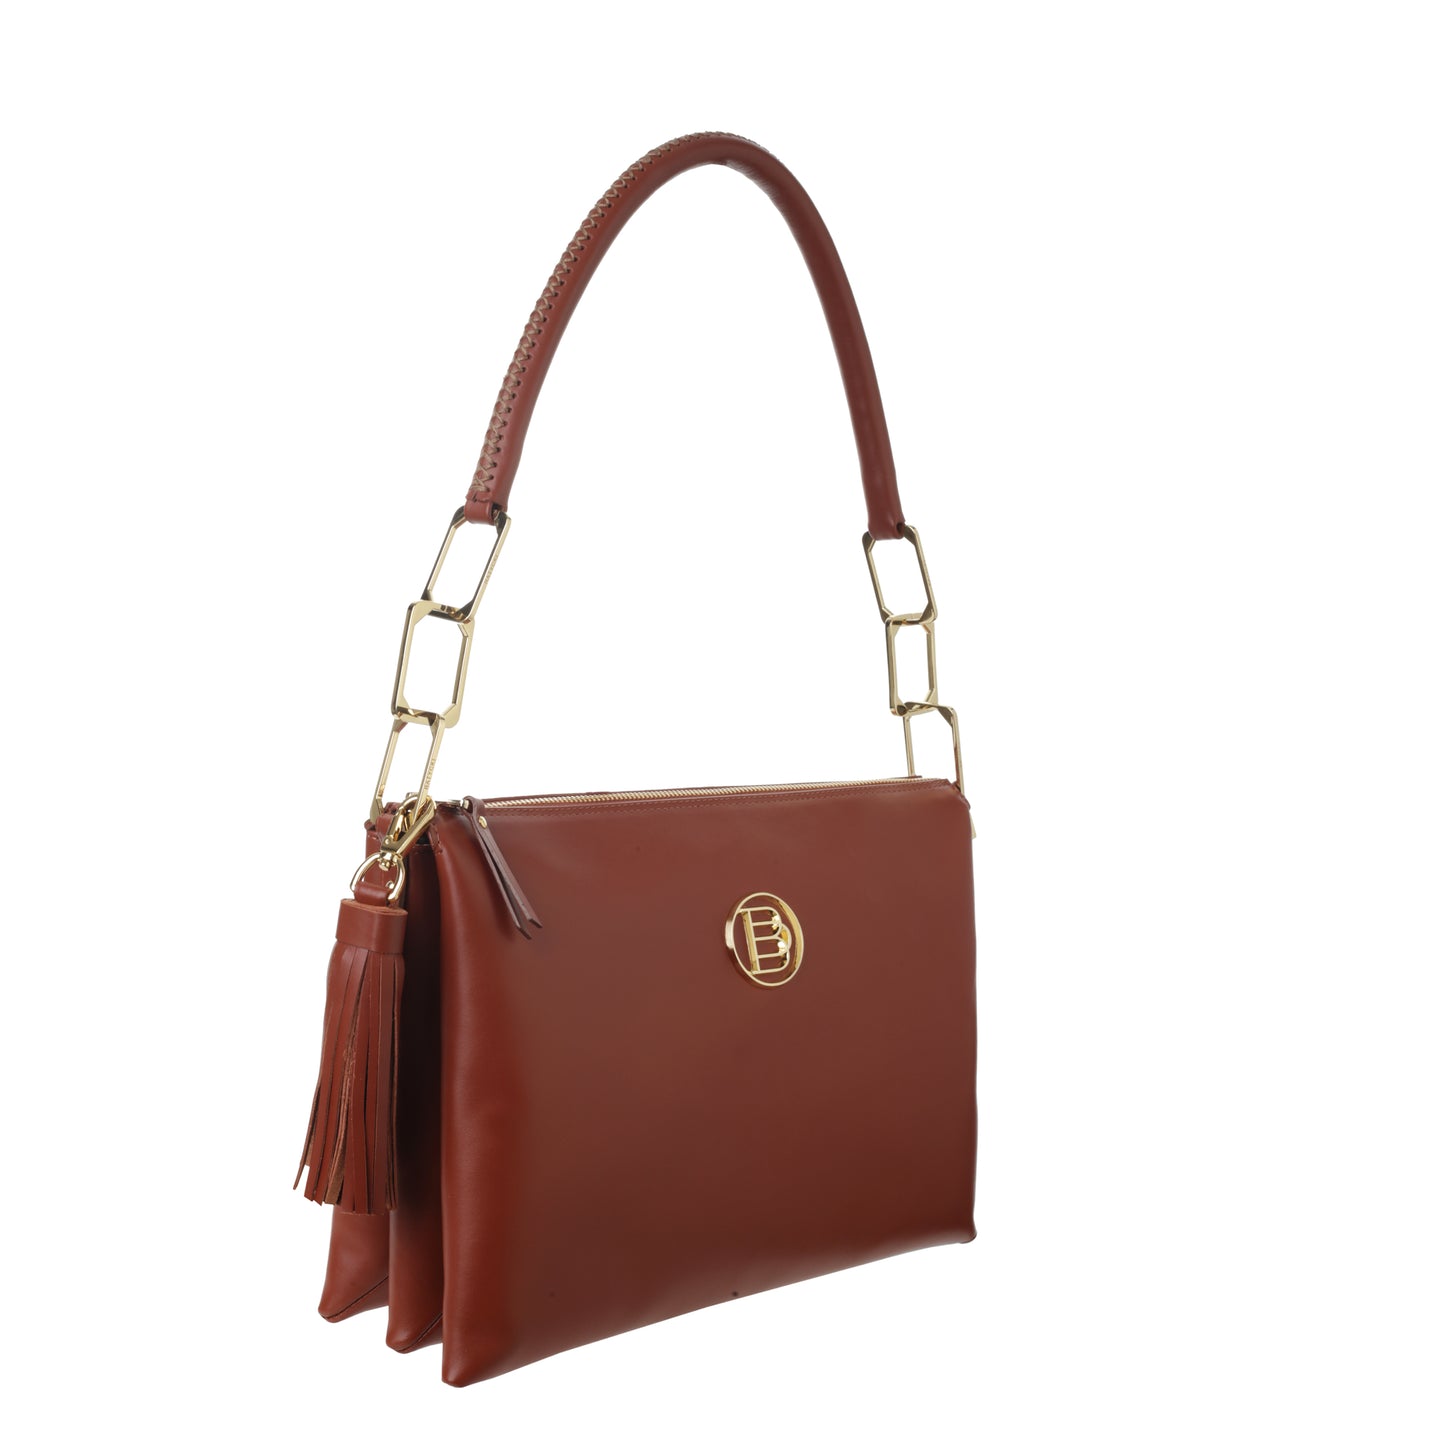 MILLO II NAPA BRANDY women's leather handbag